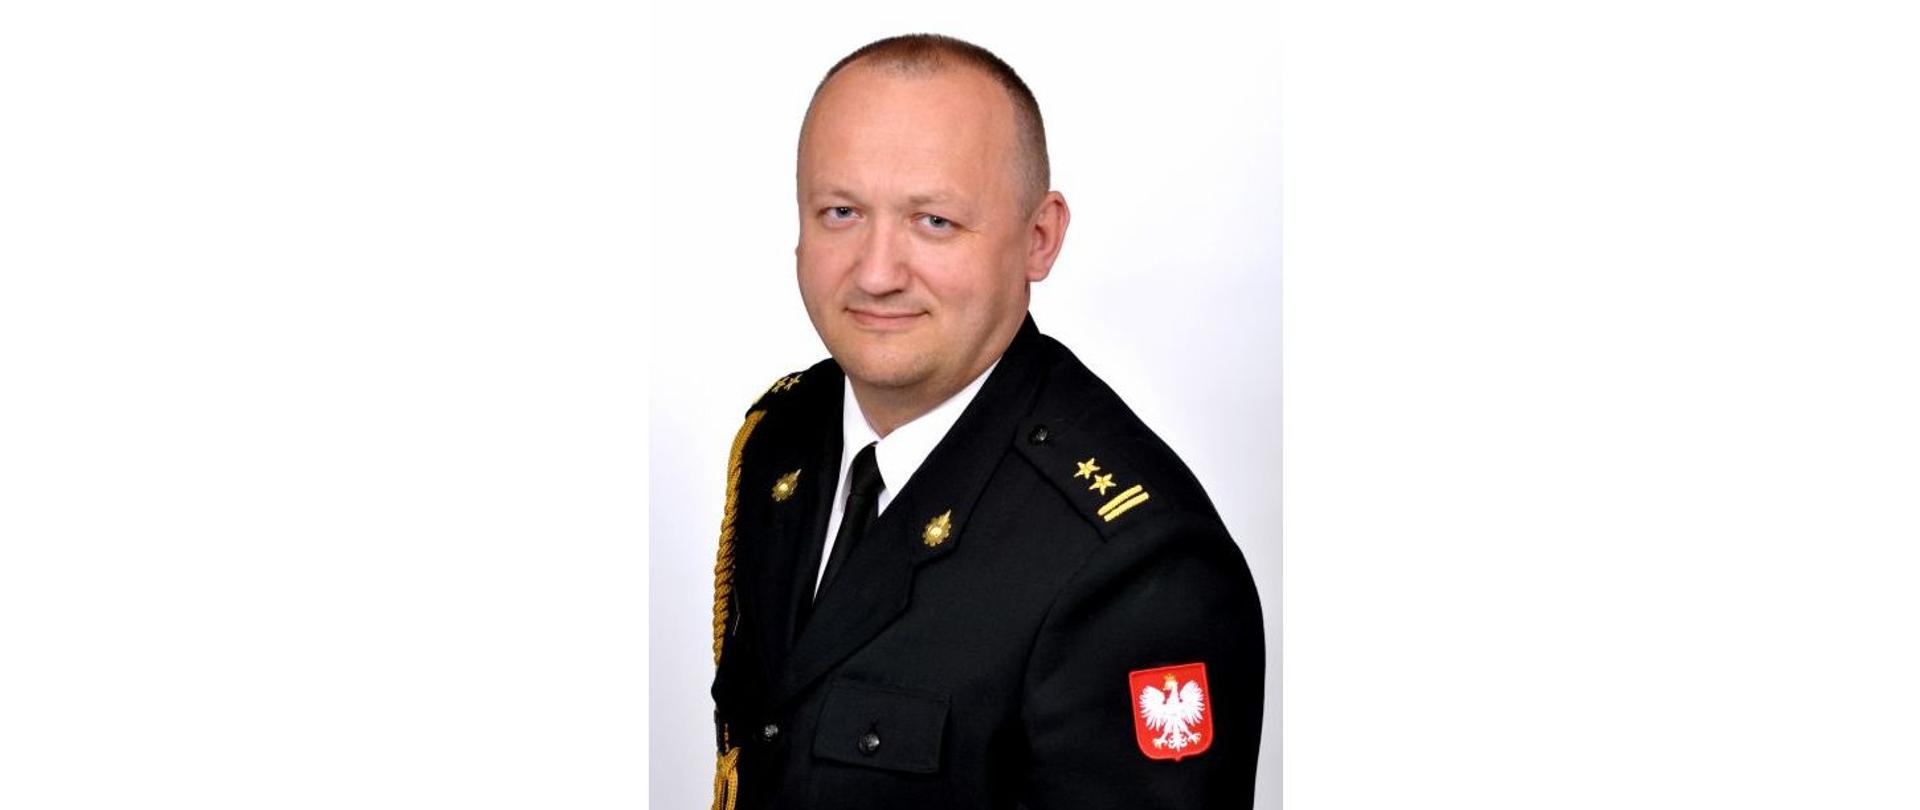 bryg. Krzysztof Muszyński - zdjęcie legitymacyjne w mundurze galowym